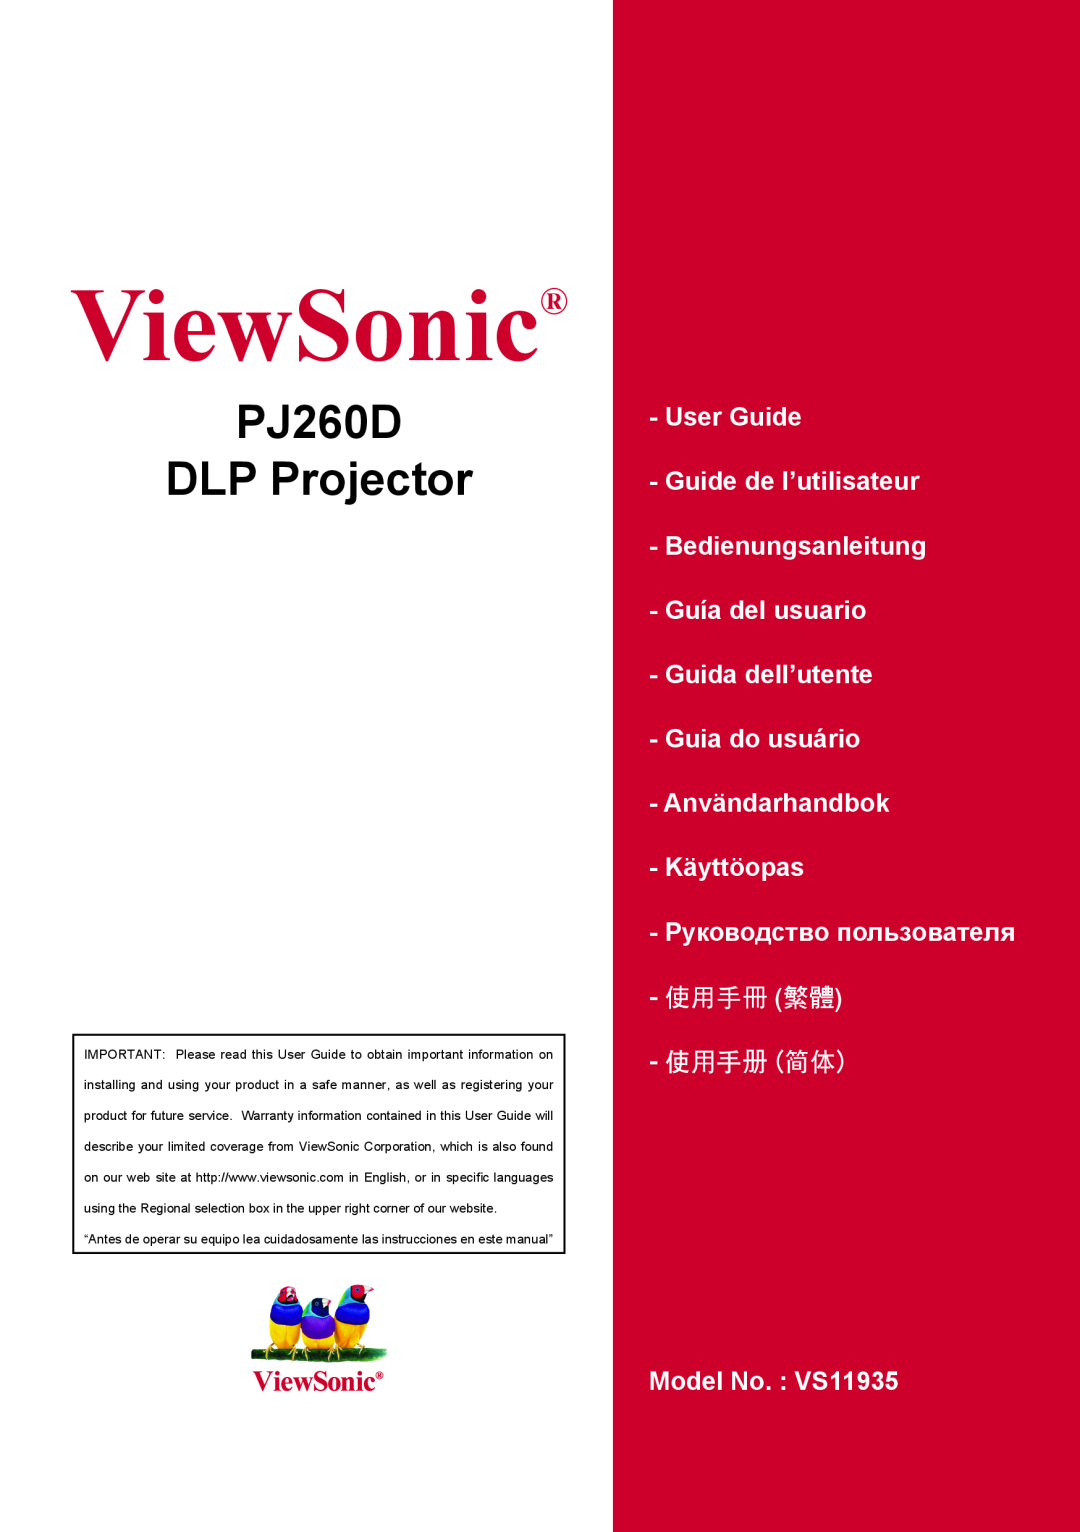 ViewSonic VS11935 warranty ViewSonic, PJ260D DLP Projector, User Guide Guide de l’utilisateur, 使用手冊 繁體 使用手冊 簡體 